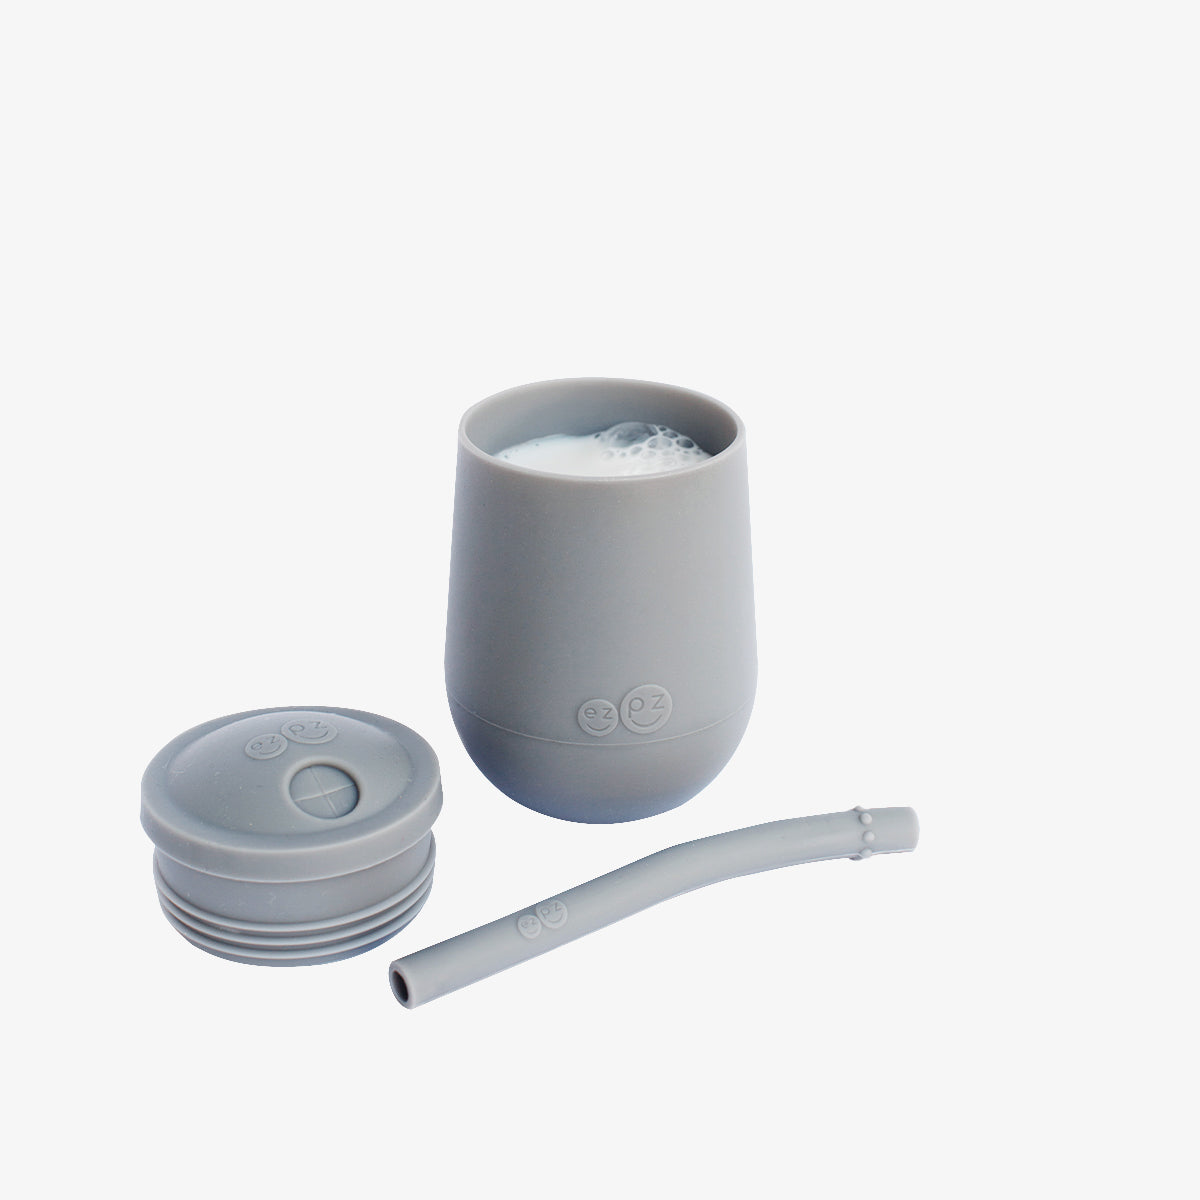 Mini Cup + Straw Training System by ezpz